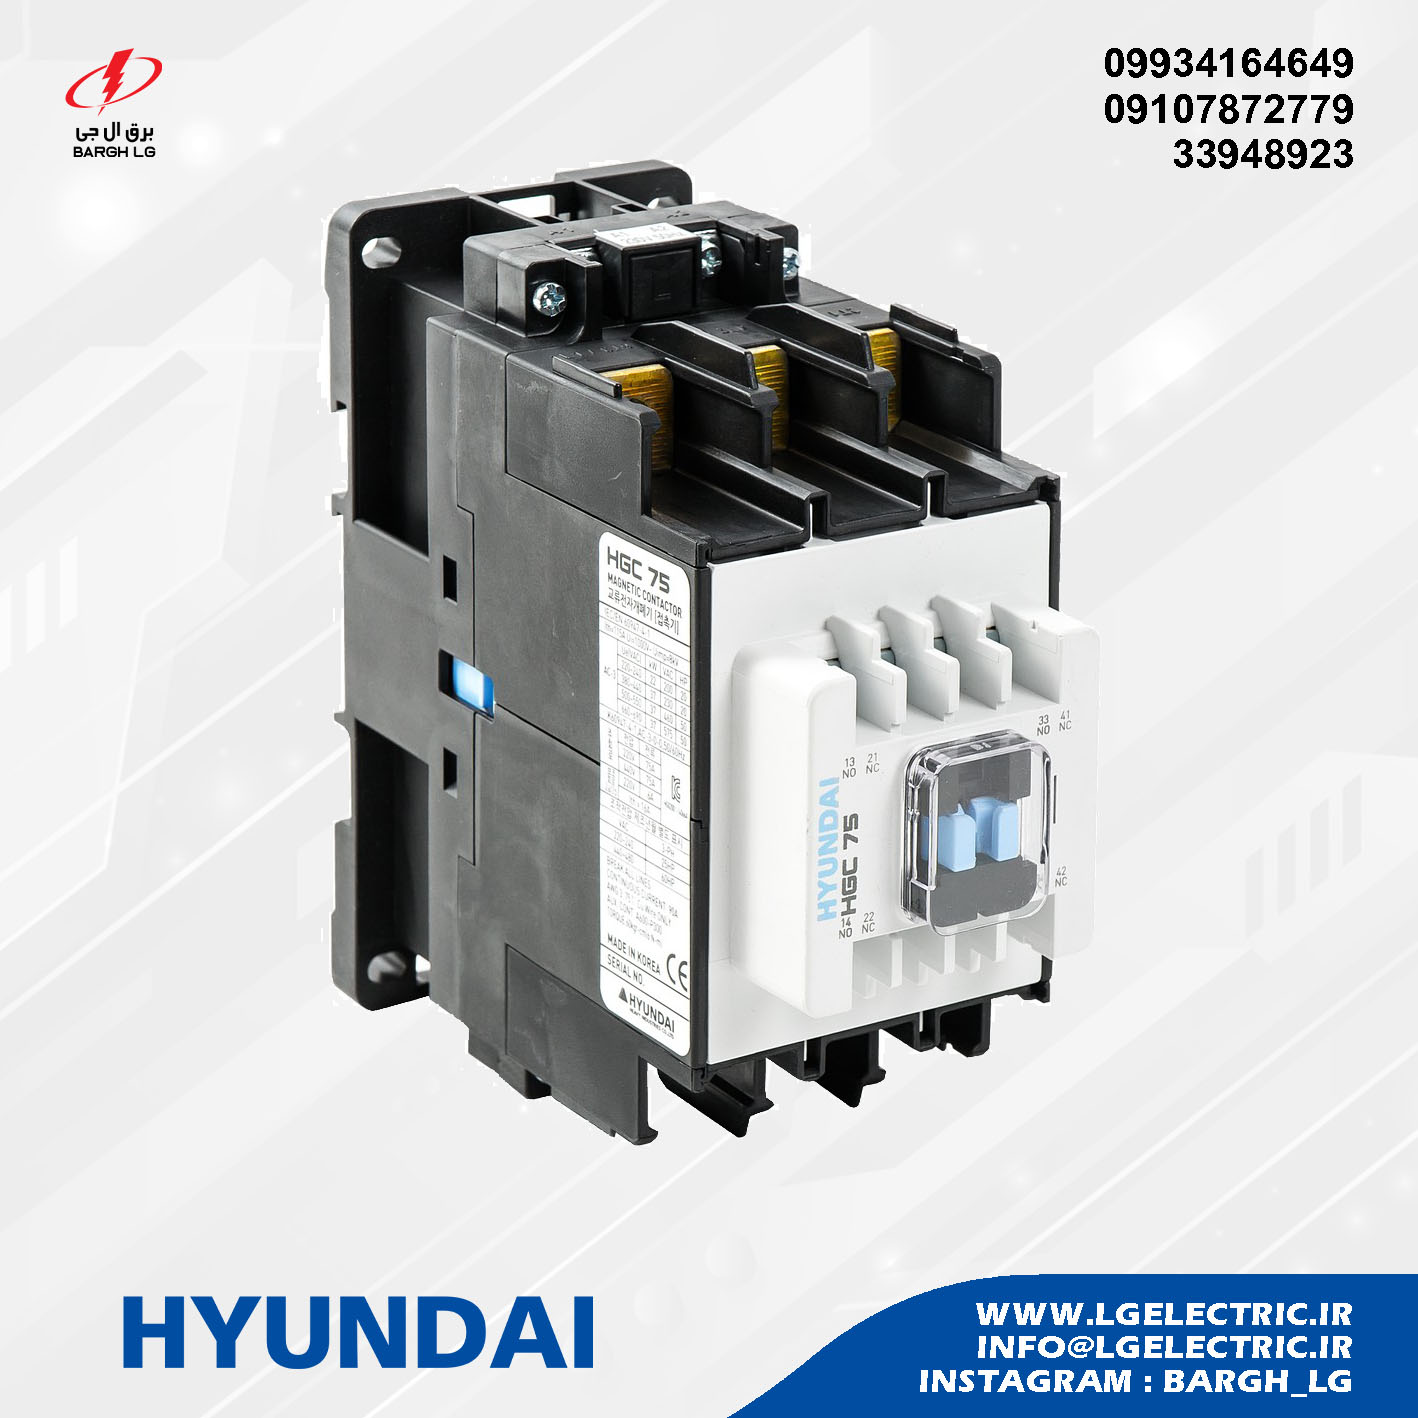 HYUNDAI Contactor HGC75